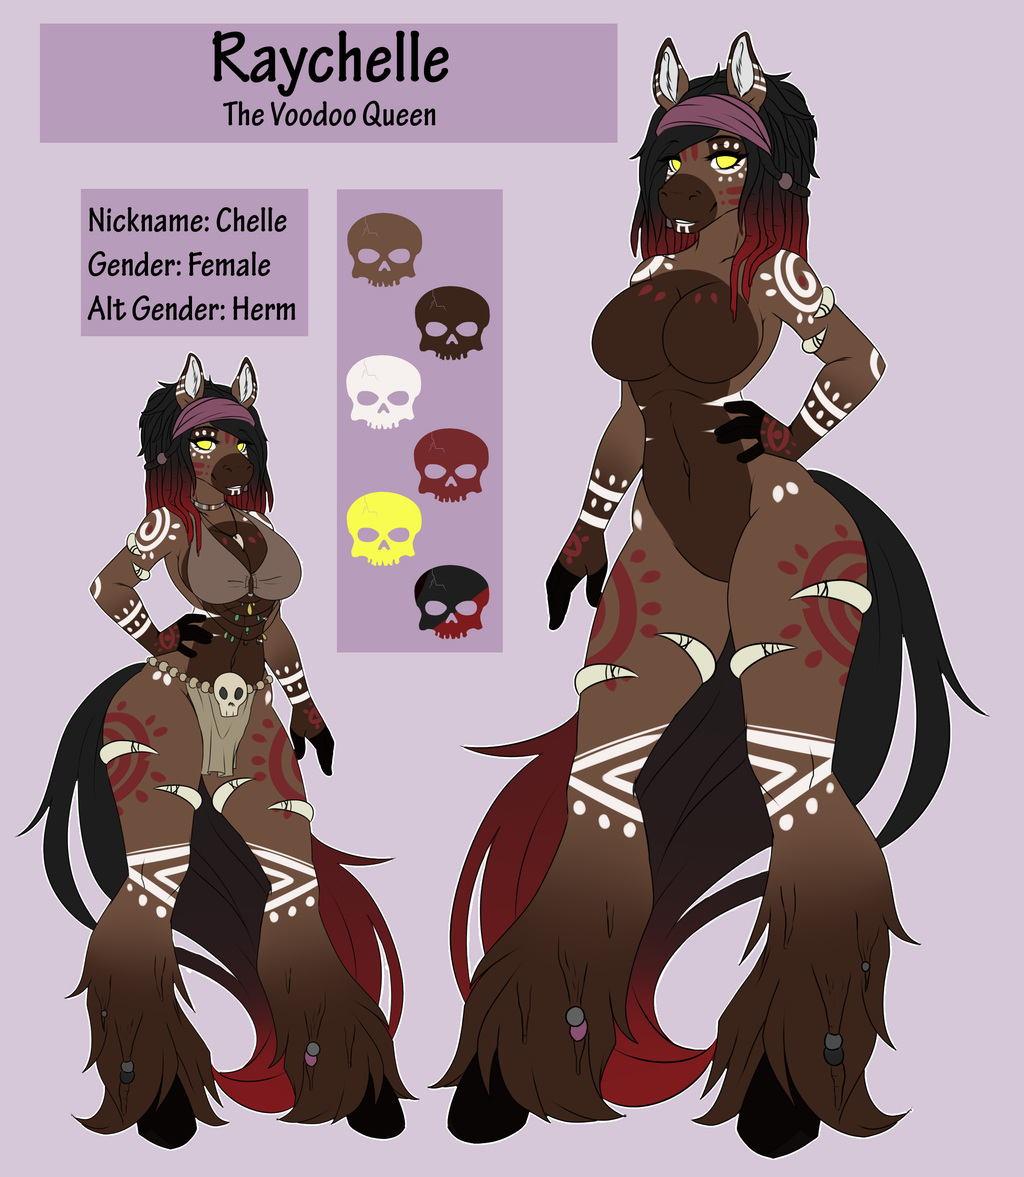 Most recent character: Raychelle: The Voodoo Queen